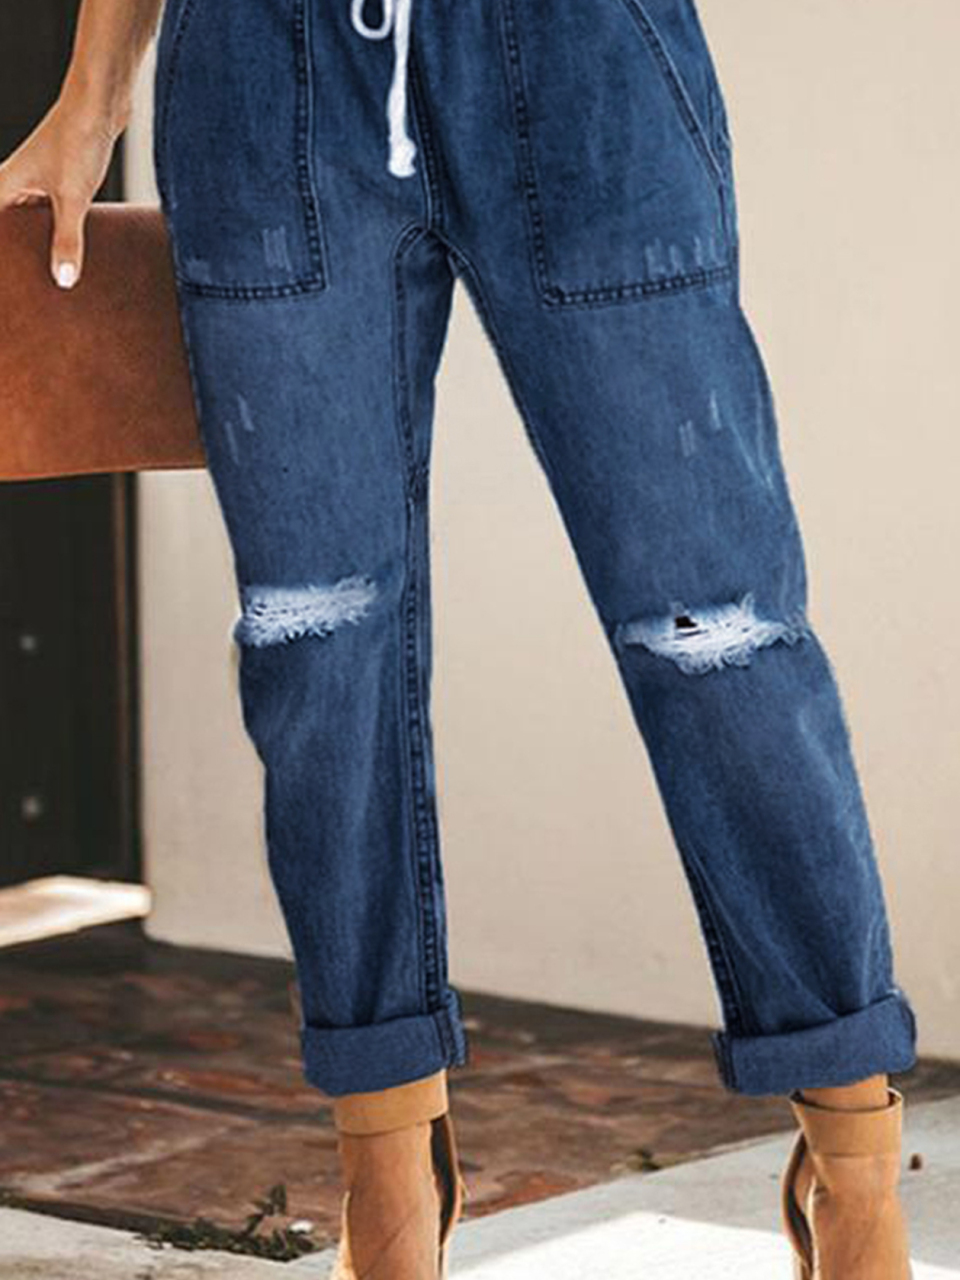 Ladies Fashion Elastic Waist Drawstring Jeans